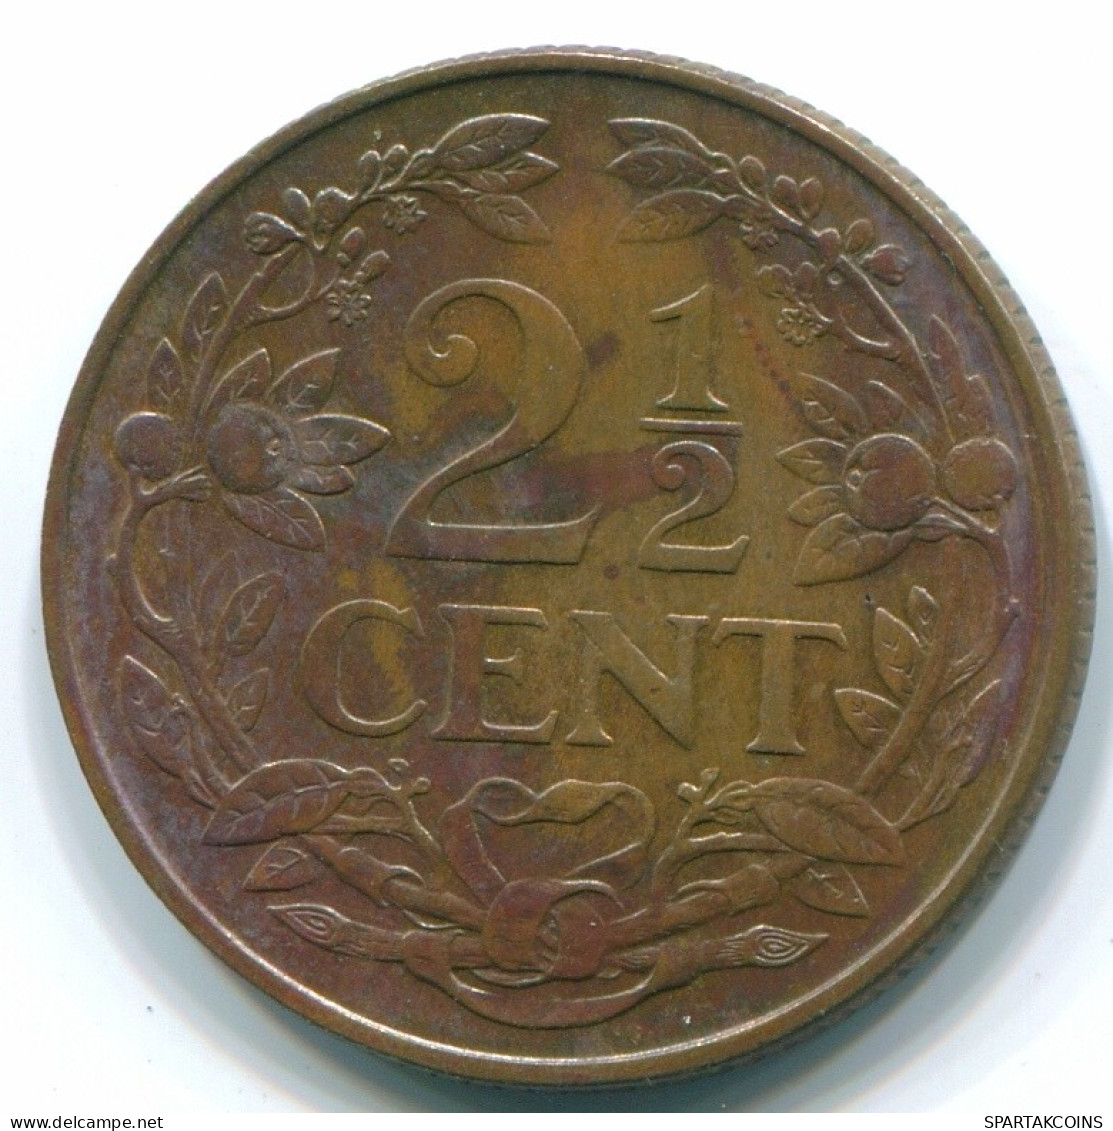 2 1/2 CENT 1965 CURACAO NIEDERLANDE Bronze Koloniale Münze #S10226.D.A - Curacao